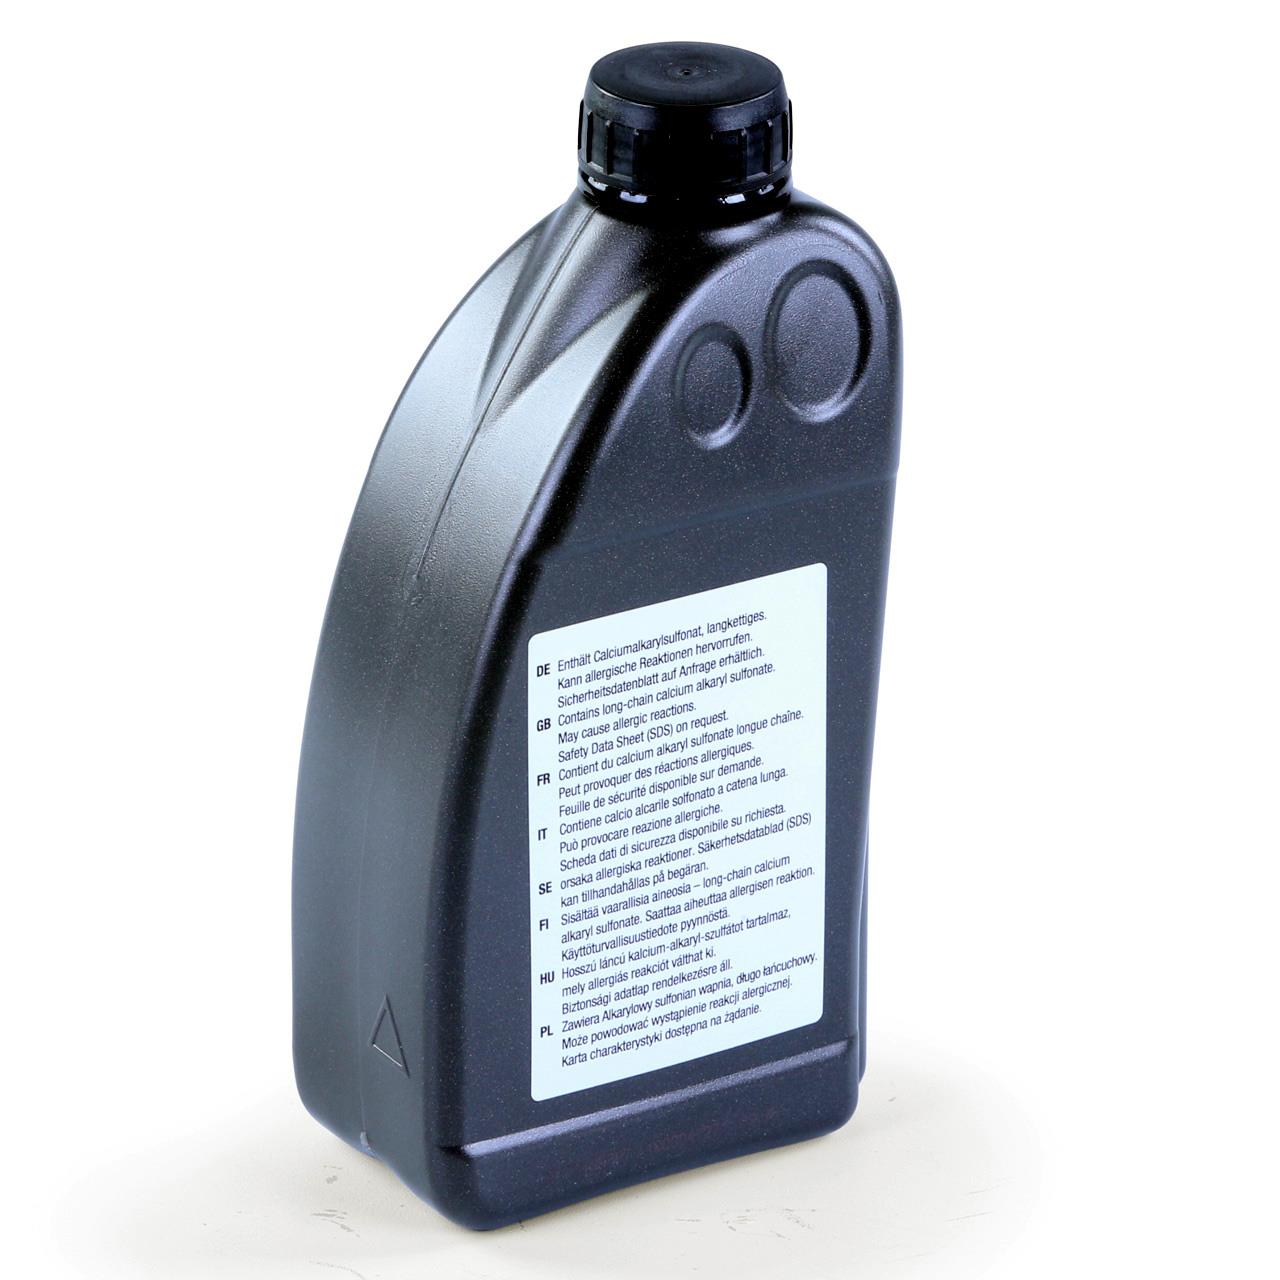 FUXTEC Sägekettenhaftöl mit Haftzusatz Kettenöl 1 L